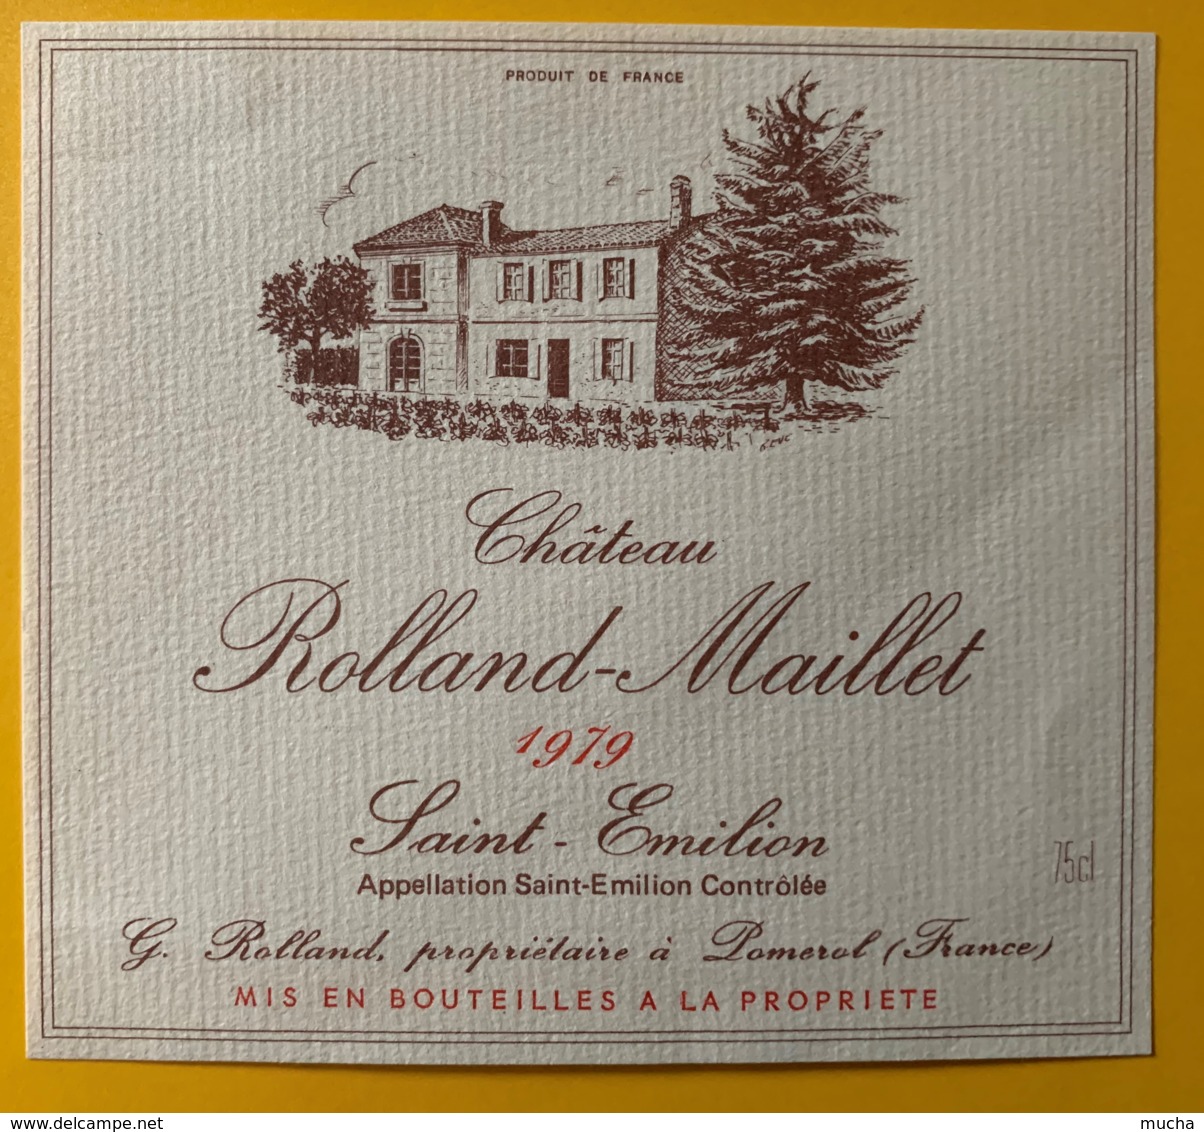 10545- Château Rolland-Maillet 1979  Saint-Emilion - Bordeaux